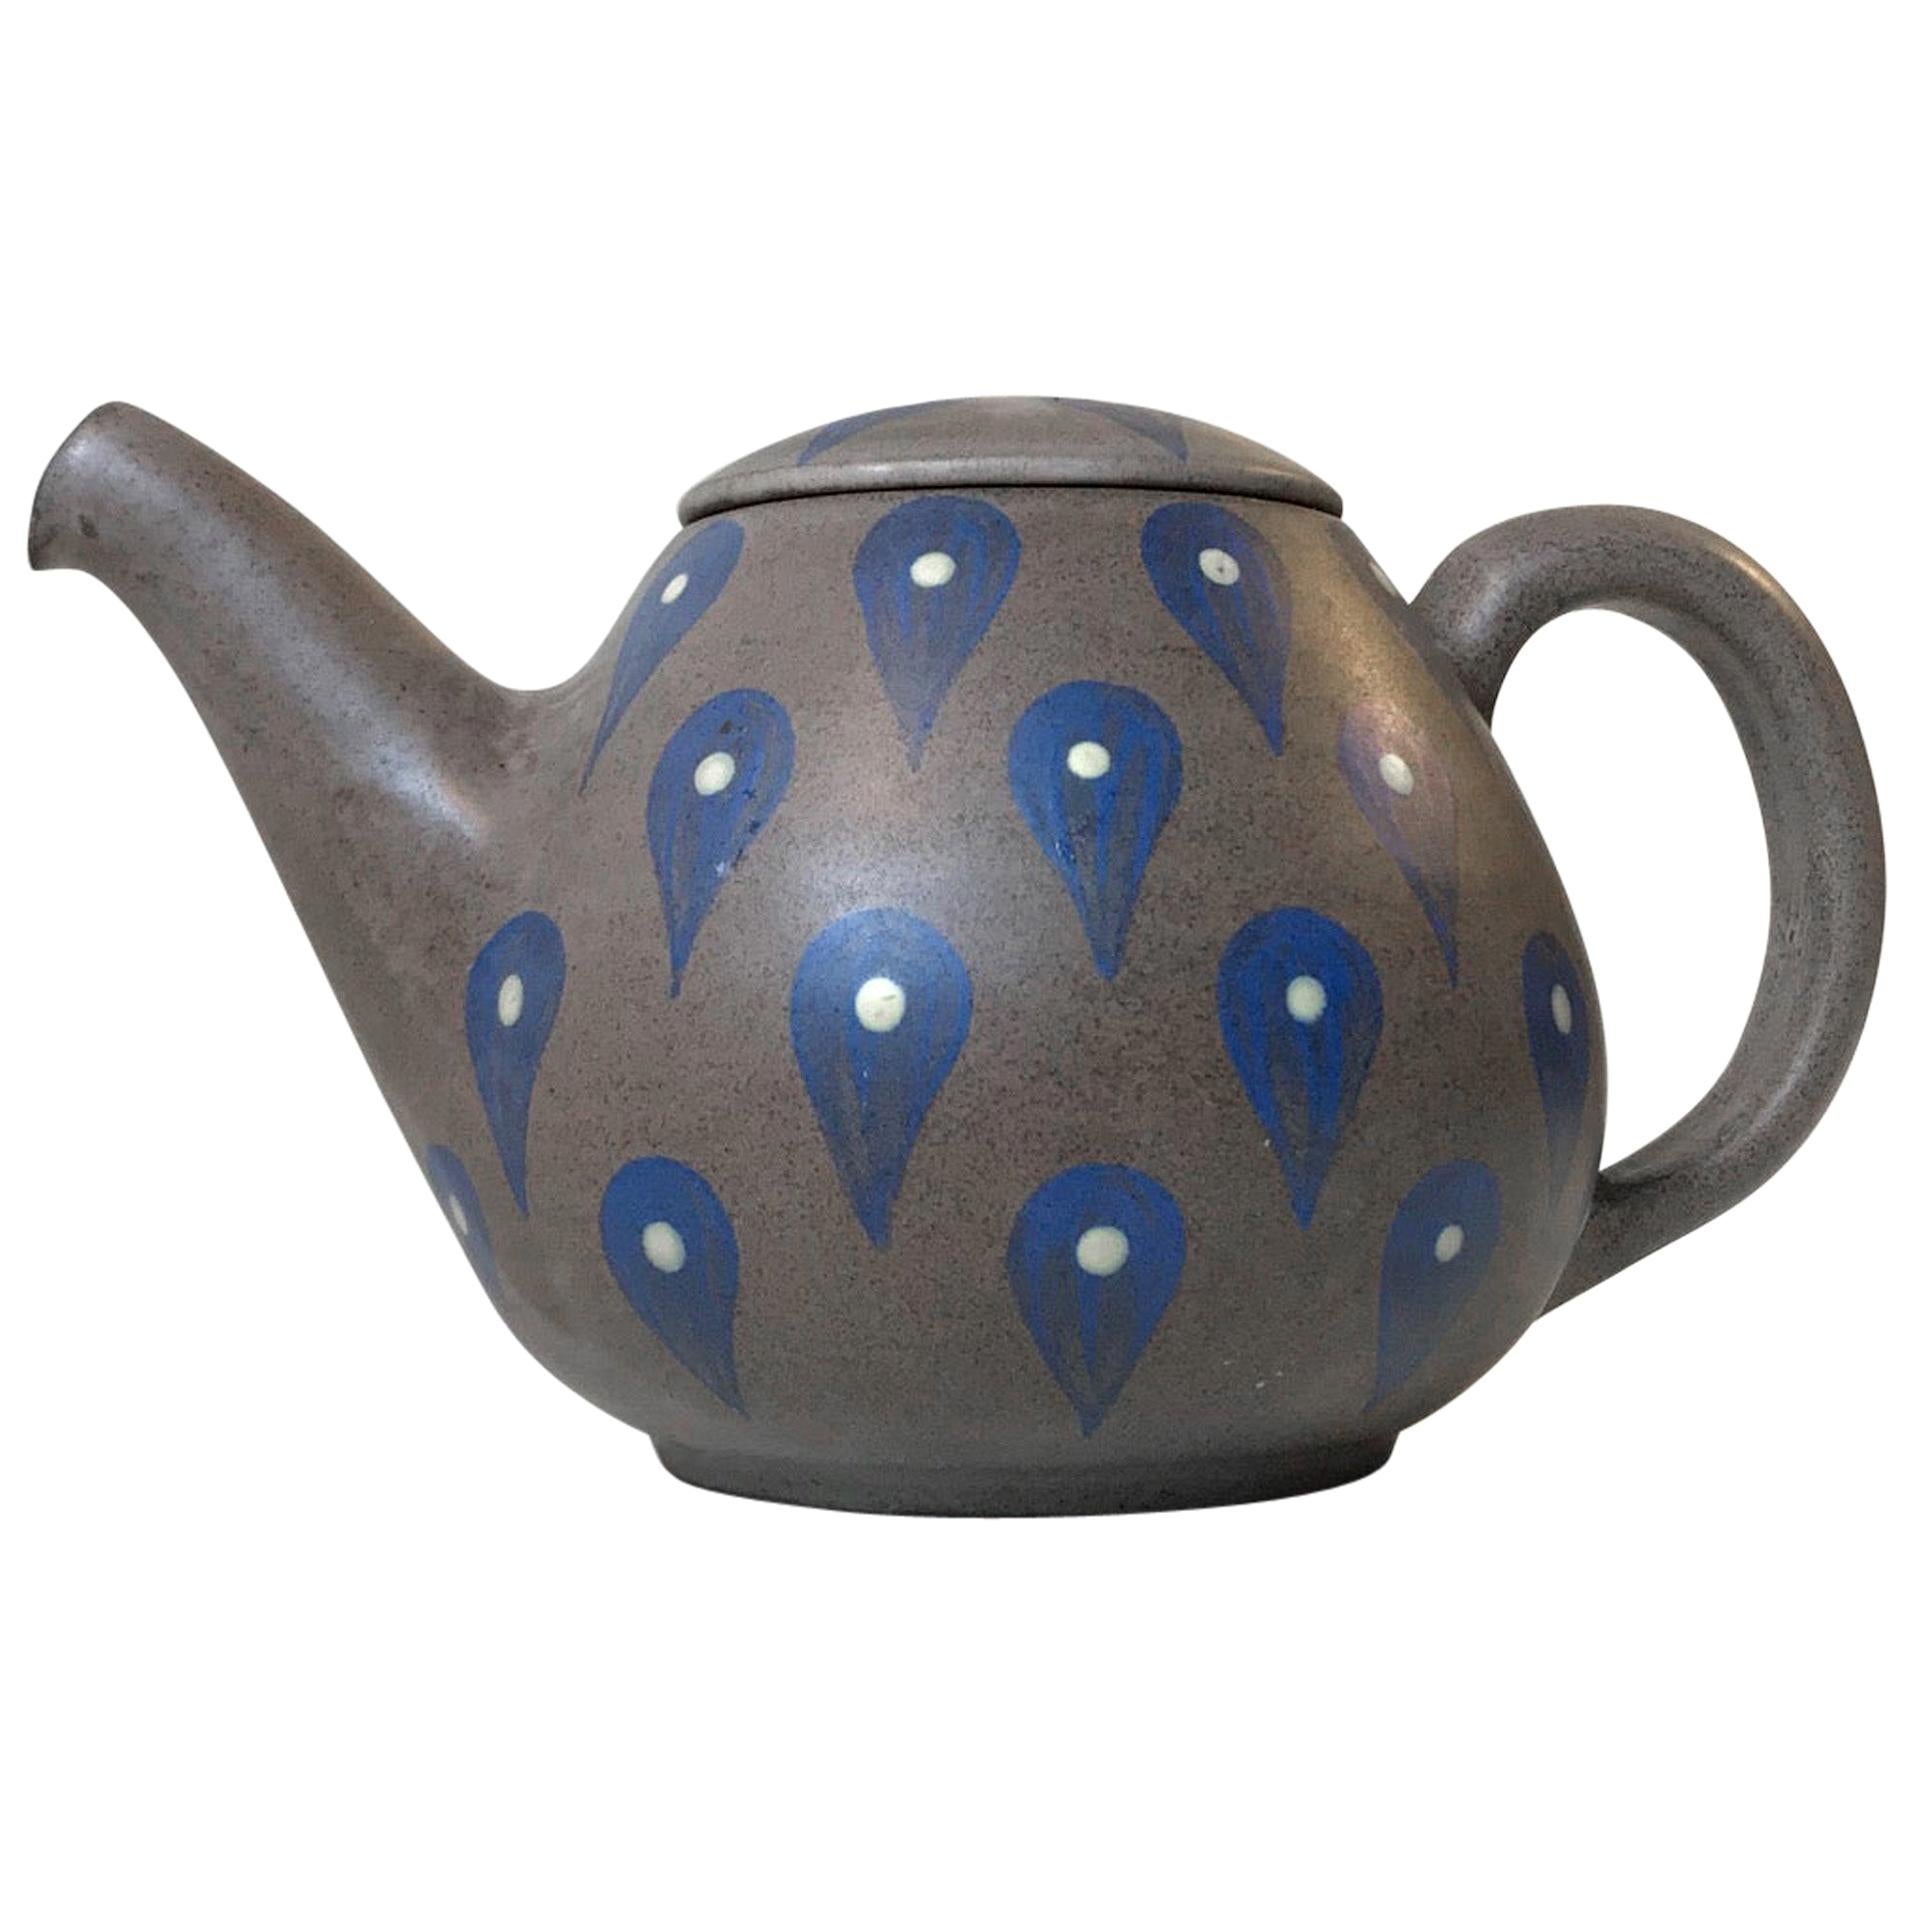 Hand Glazed Stoneware Teapot from Melle Keramik, Denmark, 1960s